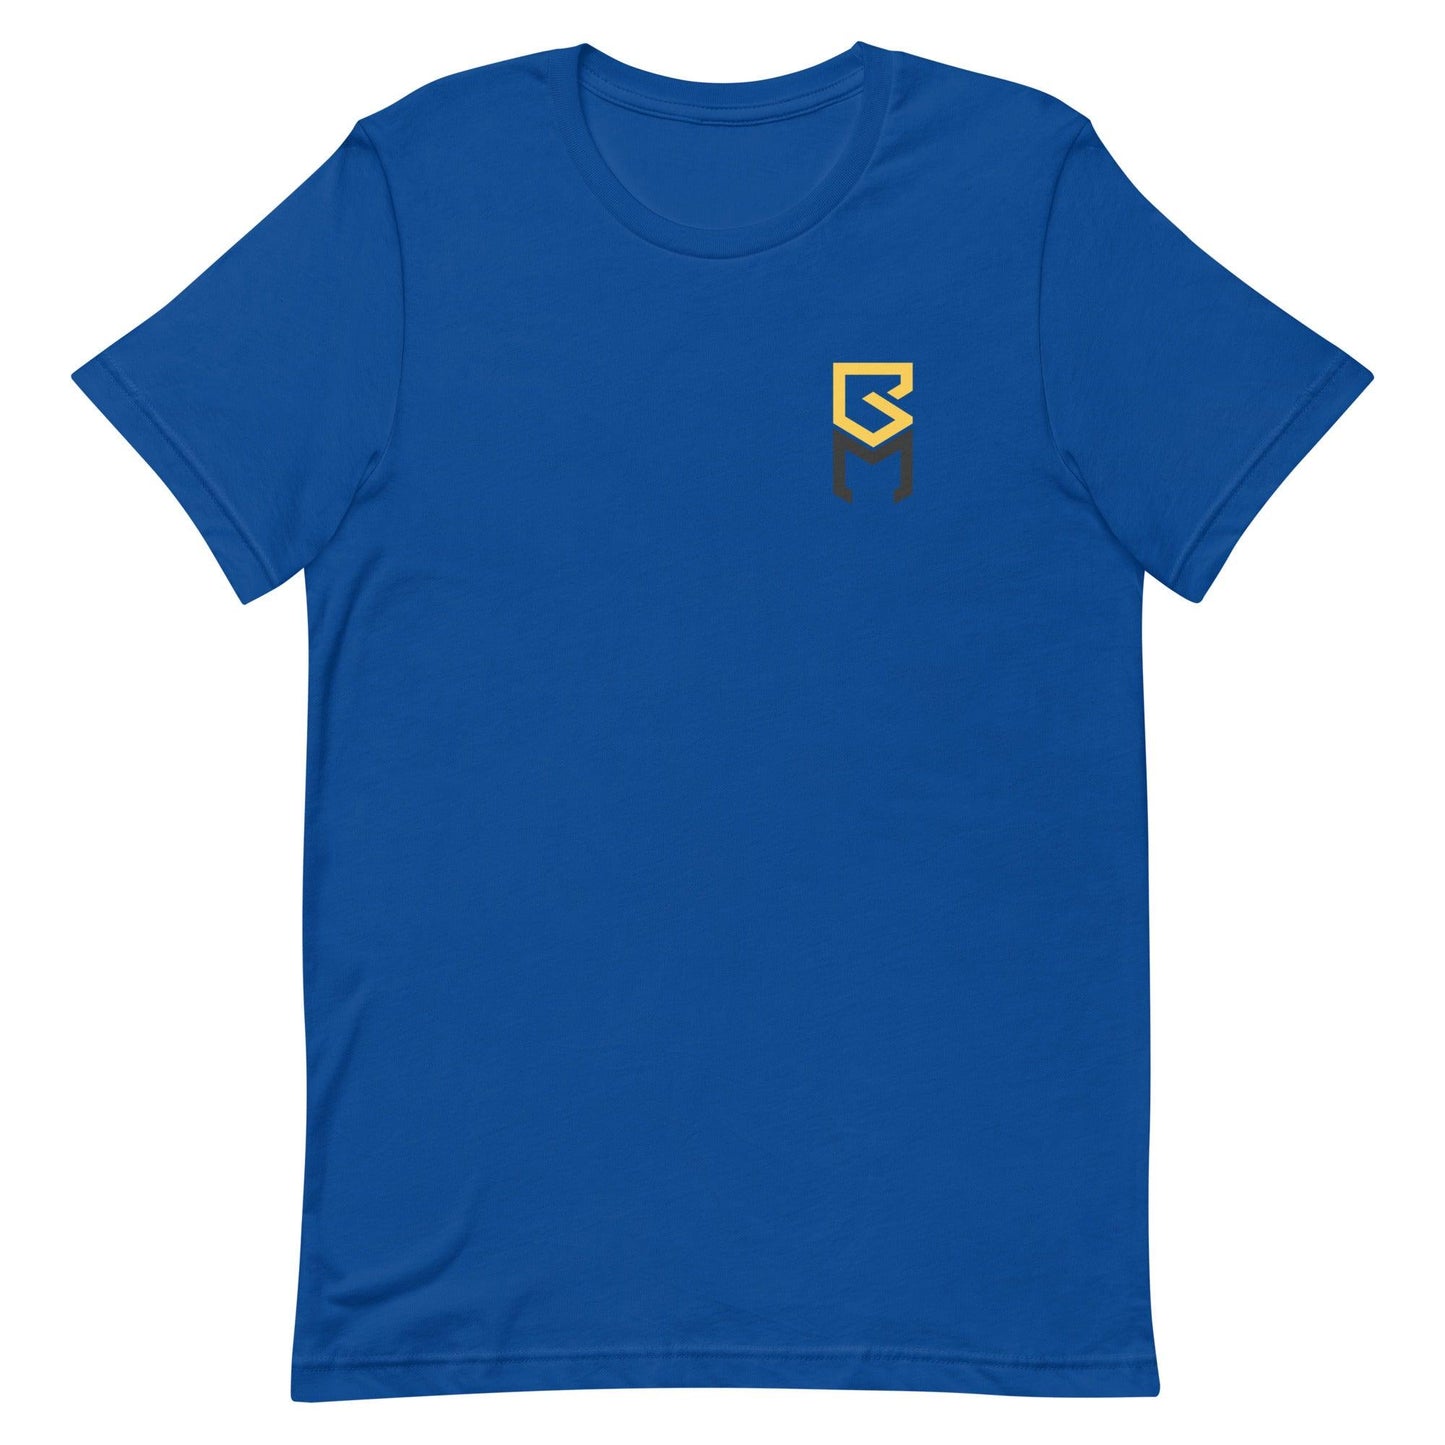 Brennan Malone "Essential" t-shirt - Fan Arch